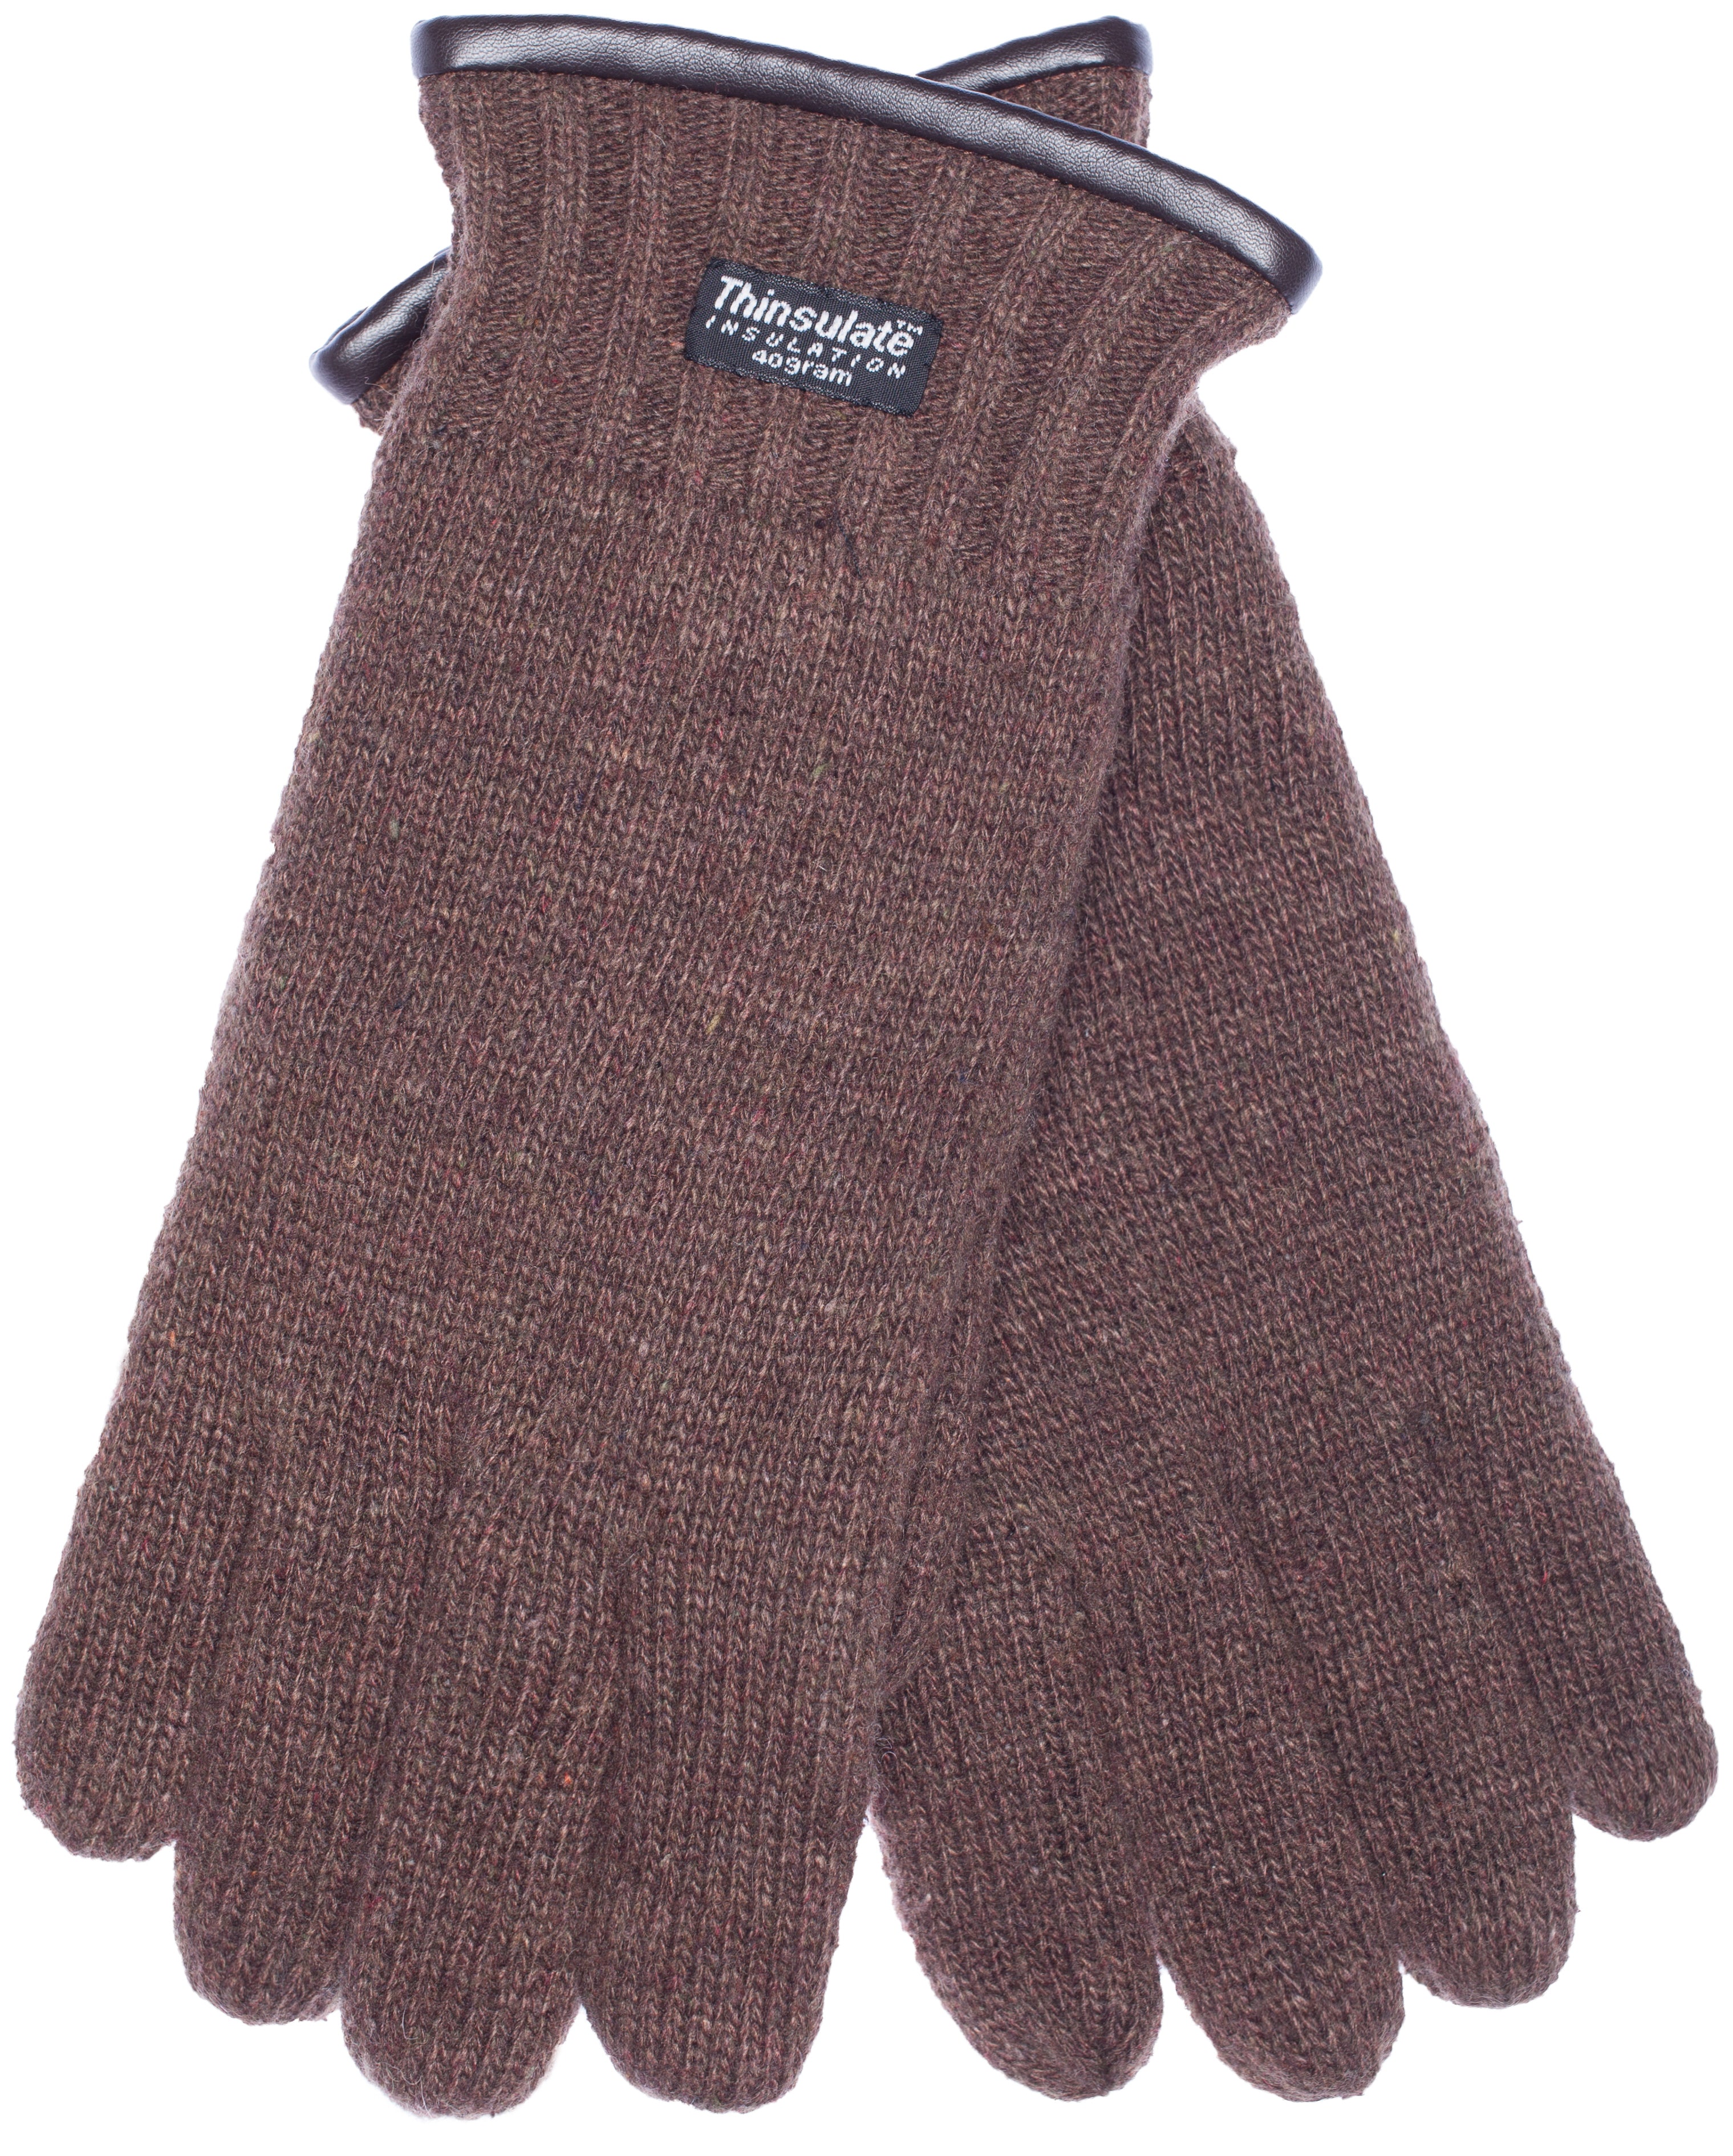 EEM Herren Strickhandschuhe, weiche Wolle oder Baumwolle je nach Farbe, Thinsulate Thermofutter, Saum mit Paspelierung